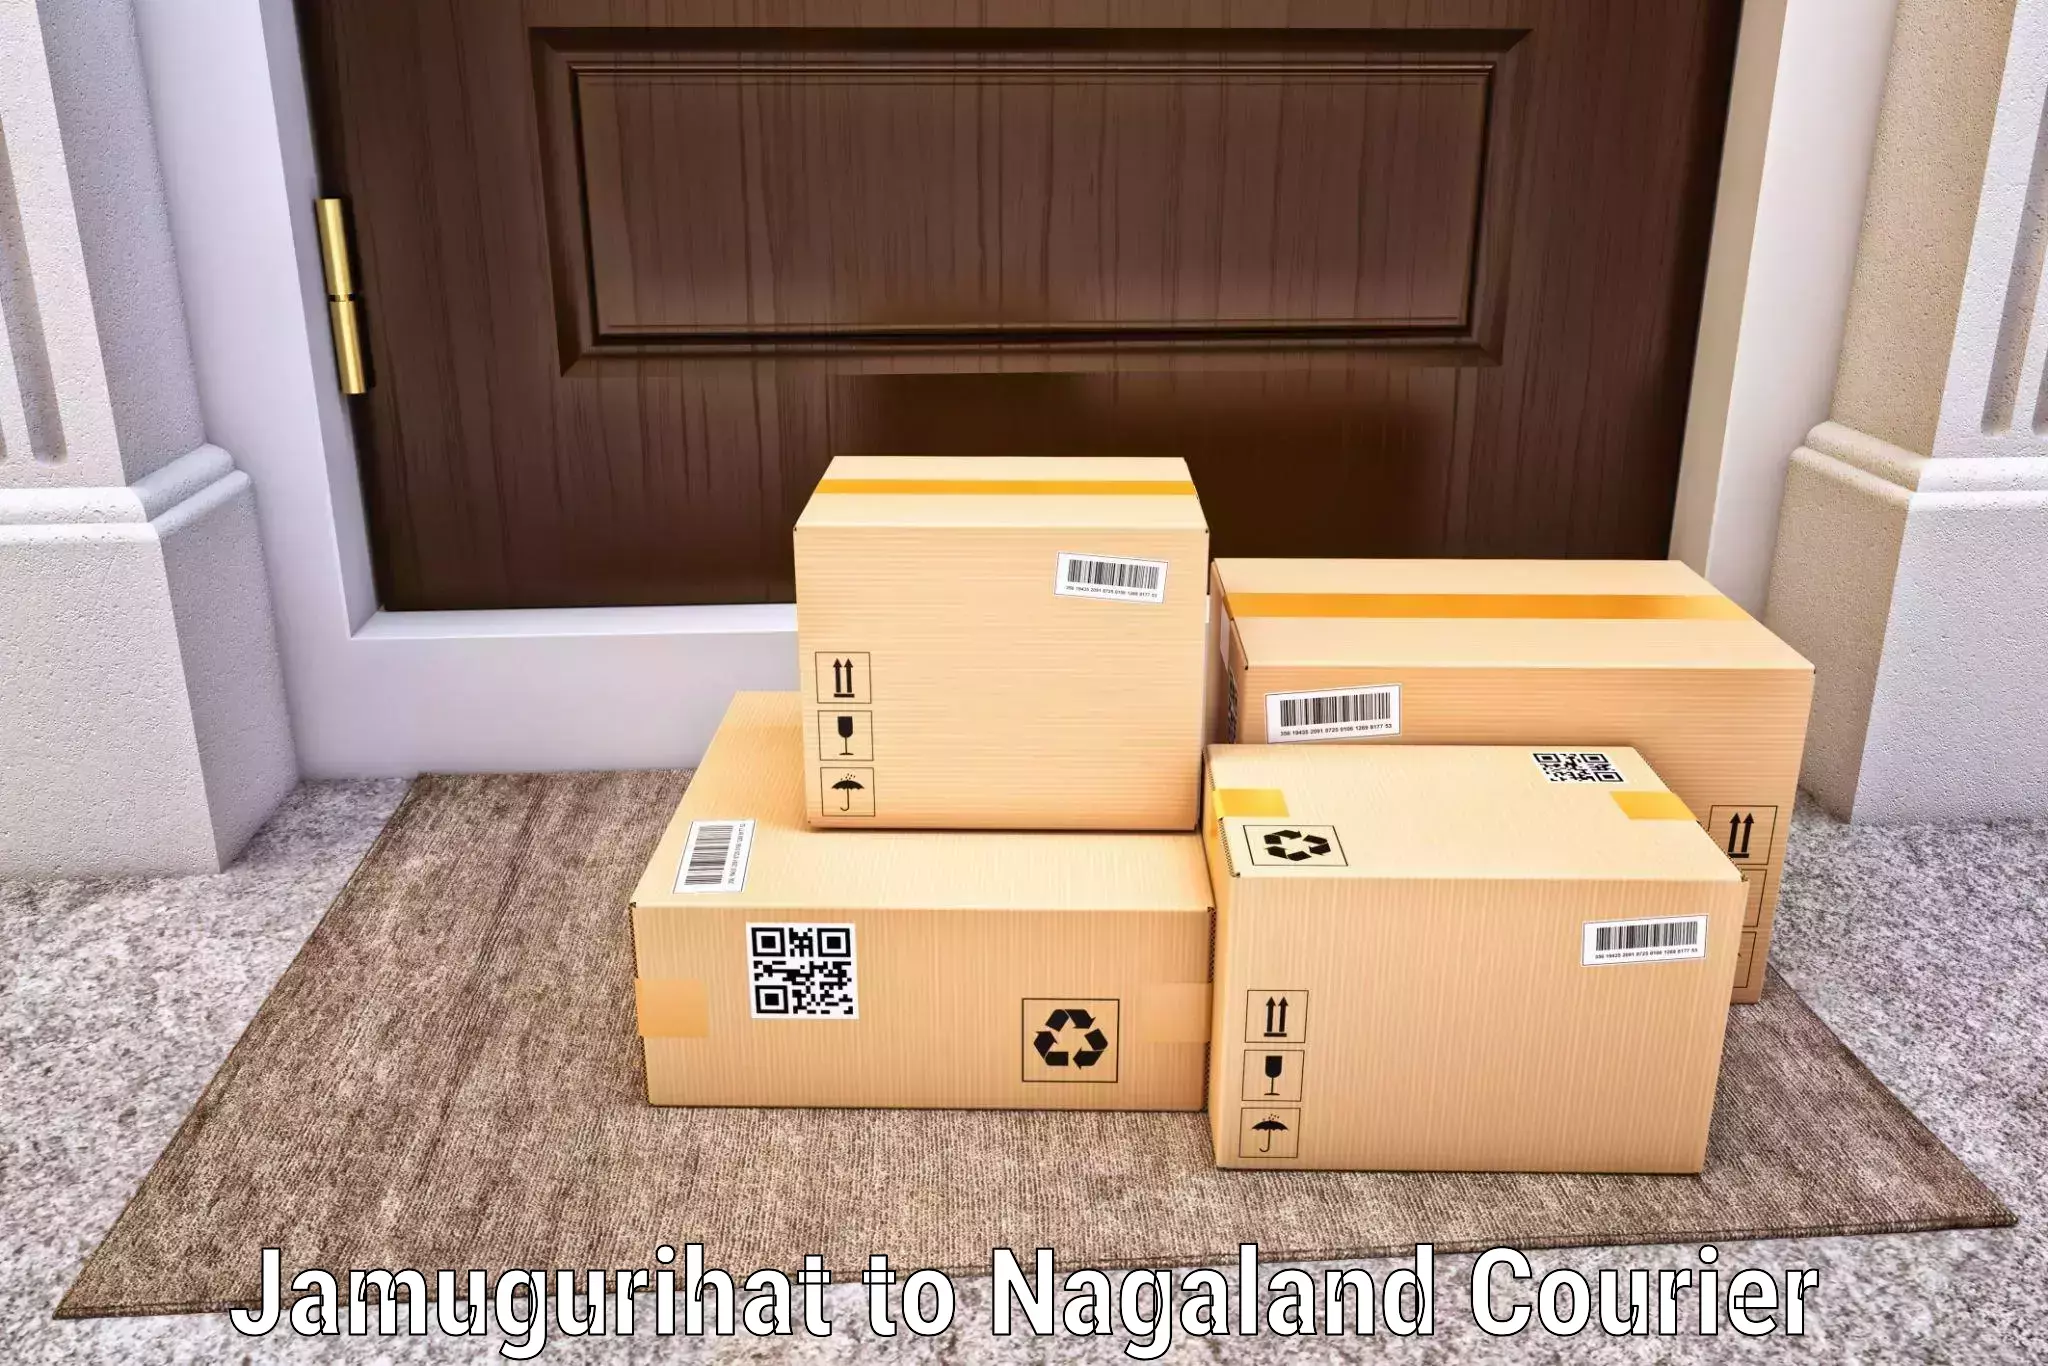 Efficient parcel delivery Jamugurihat to Tuensang